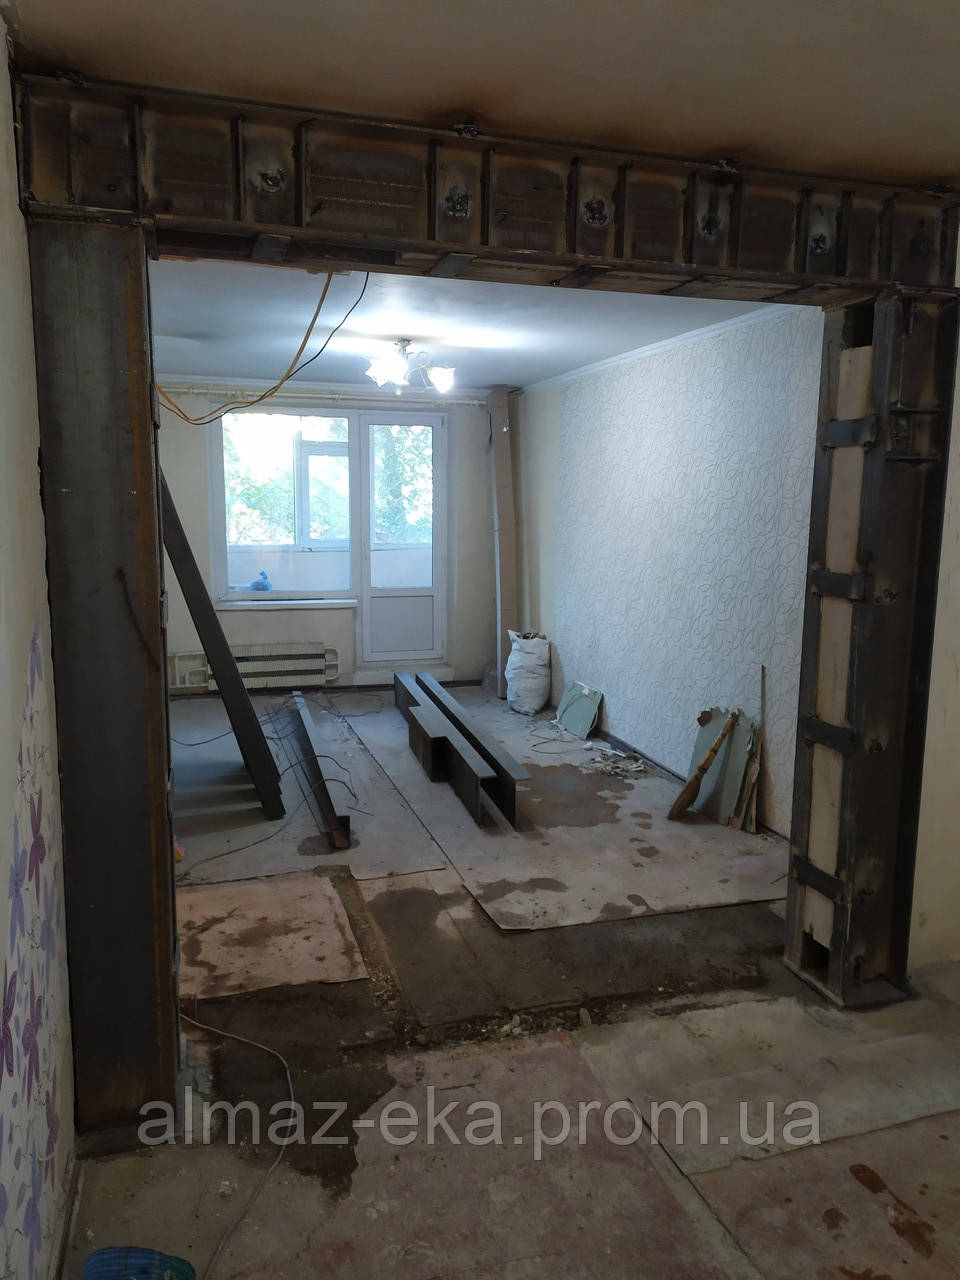 Різання отворів в бетонних,цегляних стінах Харків